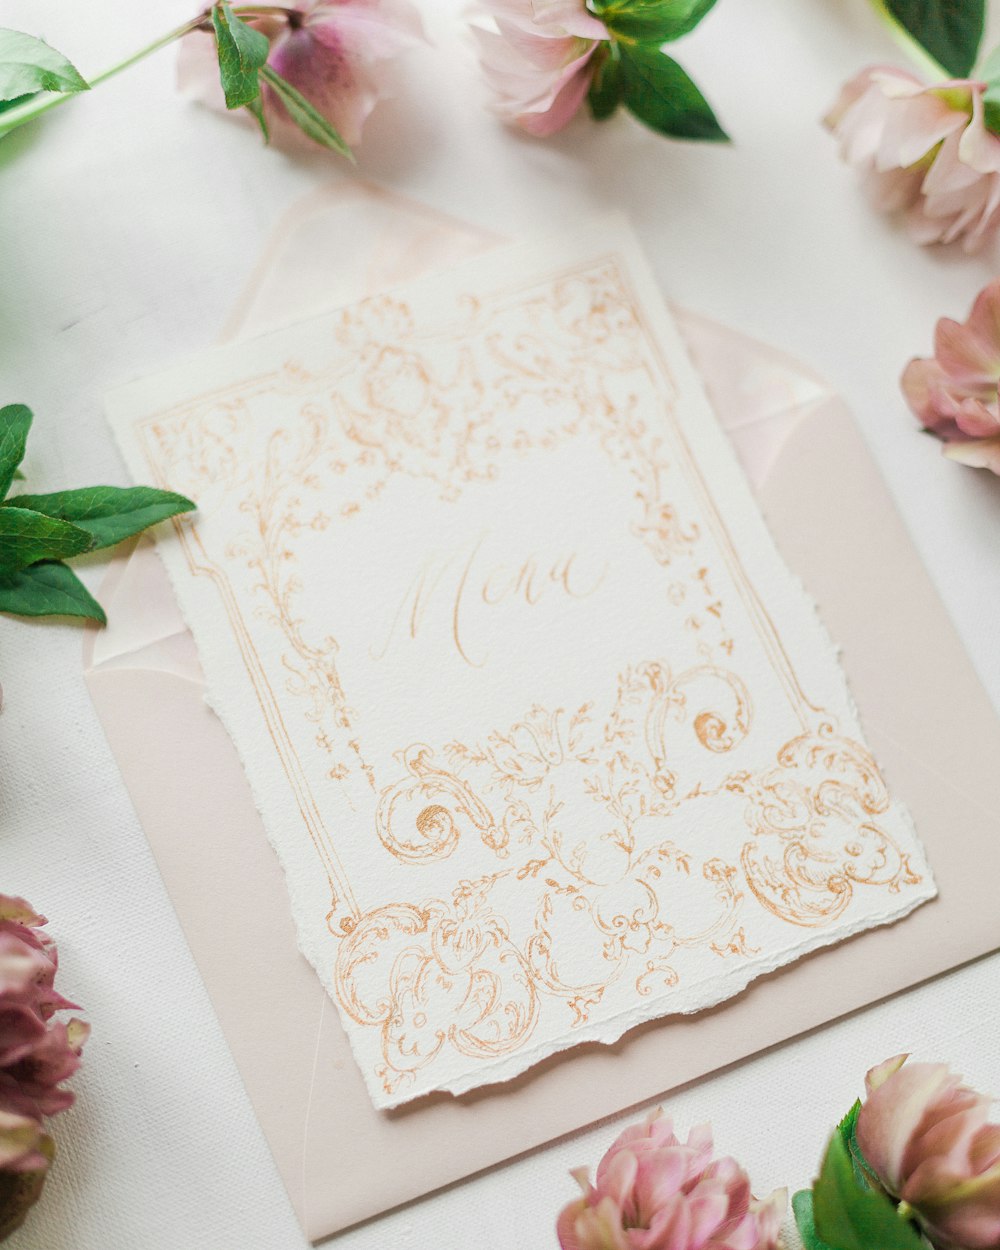 Una tarjeta de boda blanca y dorada en una mesa con flores rosadas